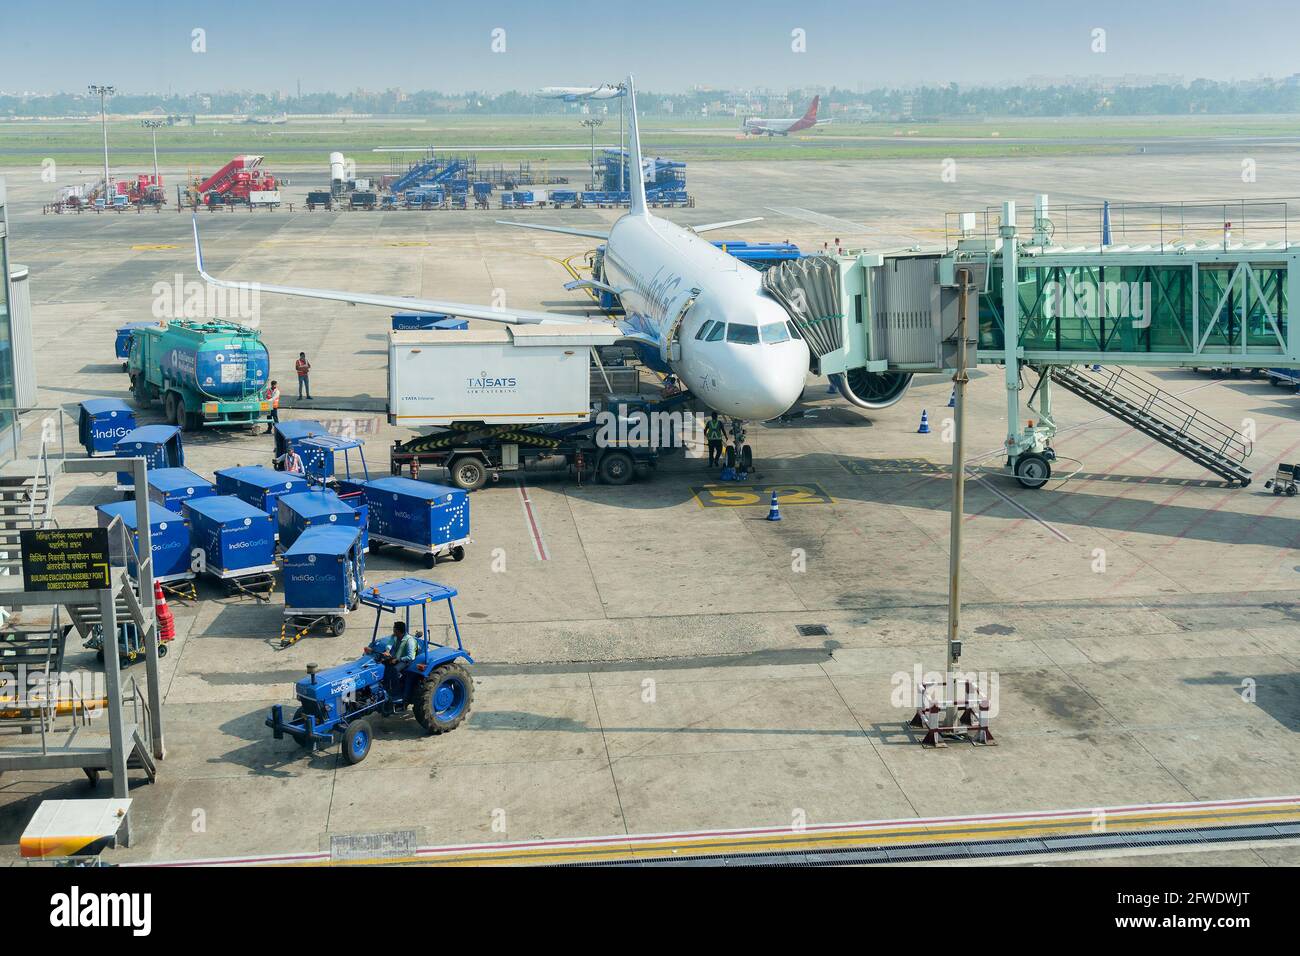 KOLKATA, BENGALE-OCCIDENTAL, INDE - 3 DÉCEMBRE 2017 : vue de l'aéroport Netaji Subhas Chandra Bose, connu sous le nom d'aéroport de Kolkata ou Calcutta. Banque D'Images